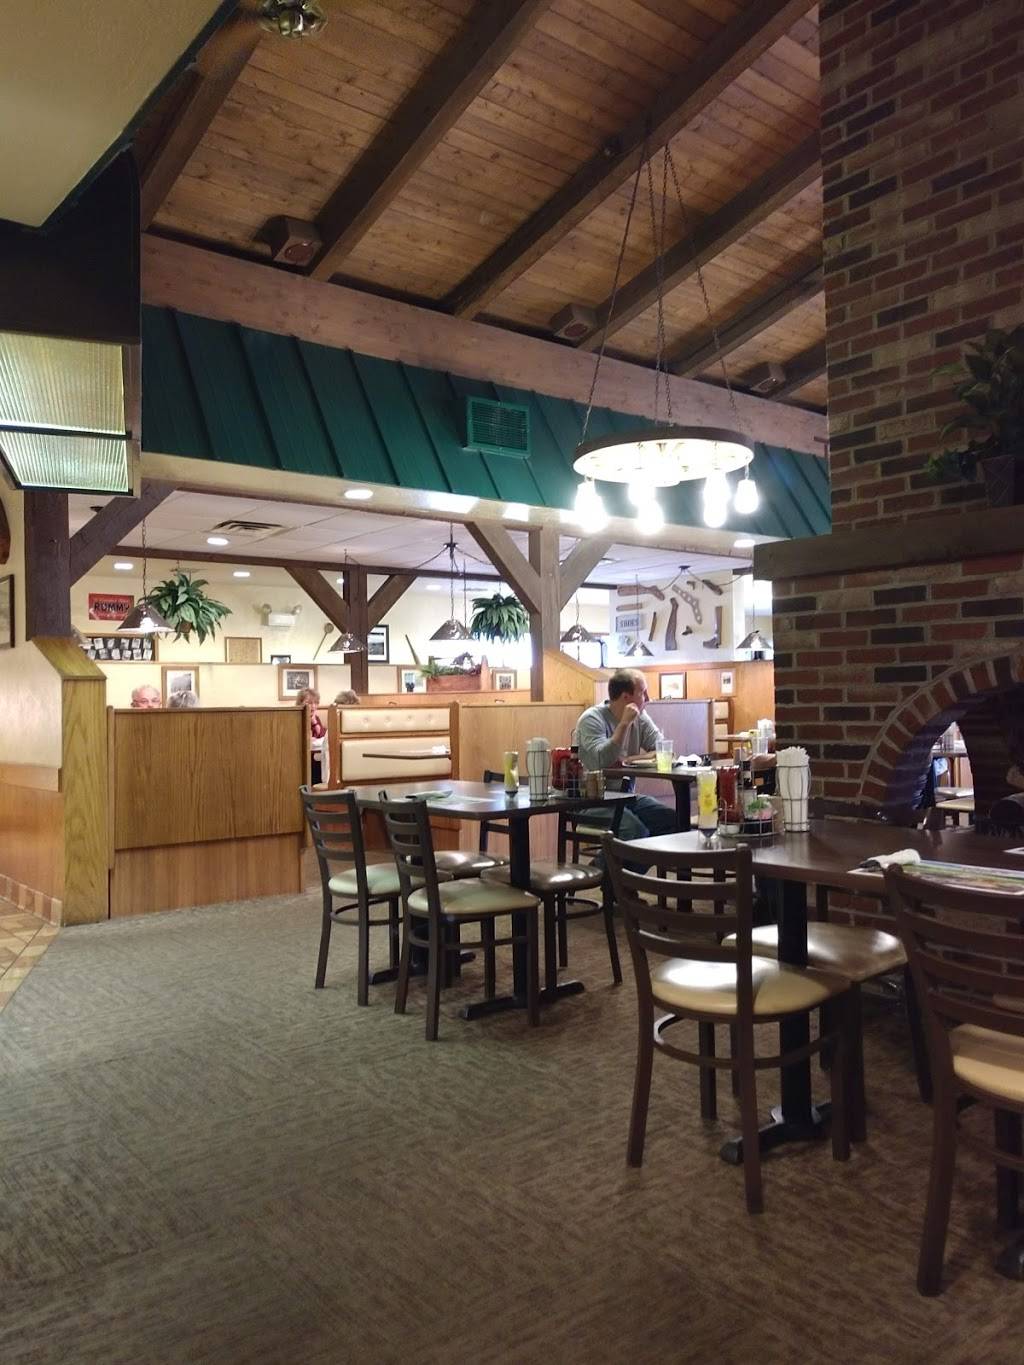 Hosss | restaurant | 1954 E 3rd St, Williamsport, PA 17701, USA | 5703260838 OR +1 570-326-0838